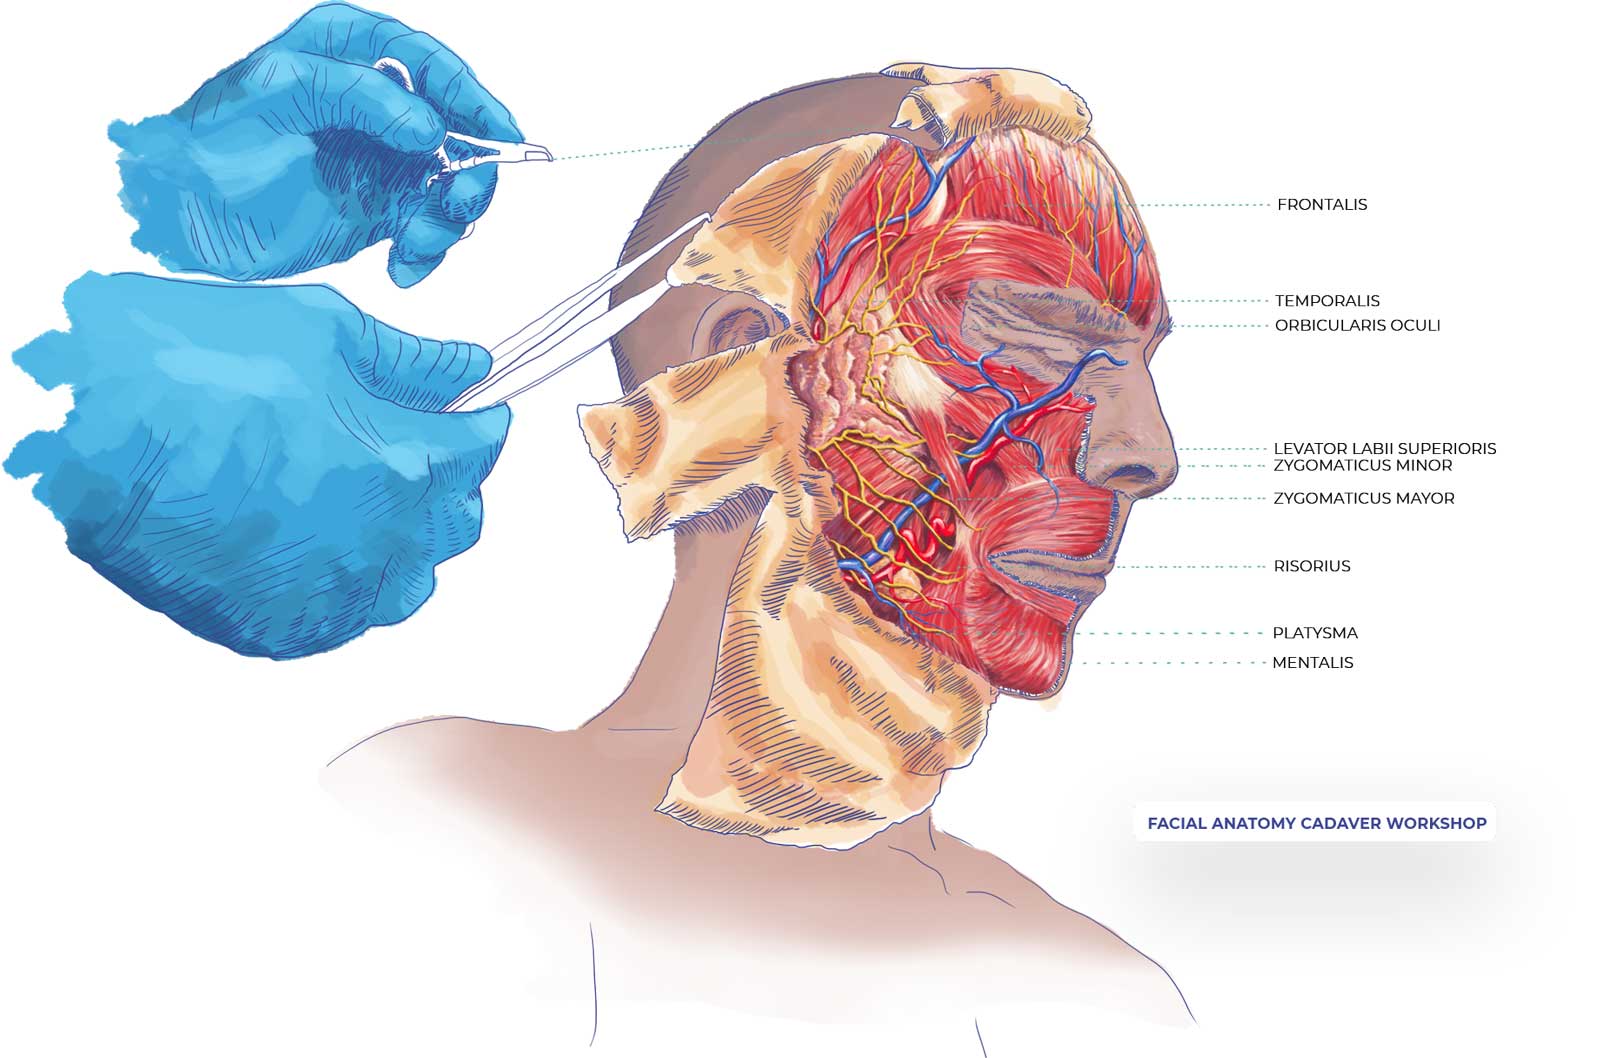 facial-anatomy-cadaver-workshop-illustration-after